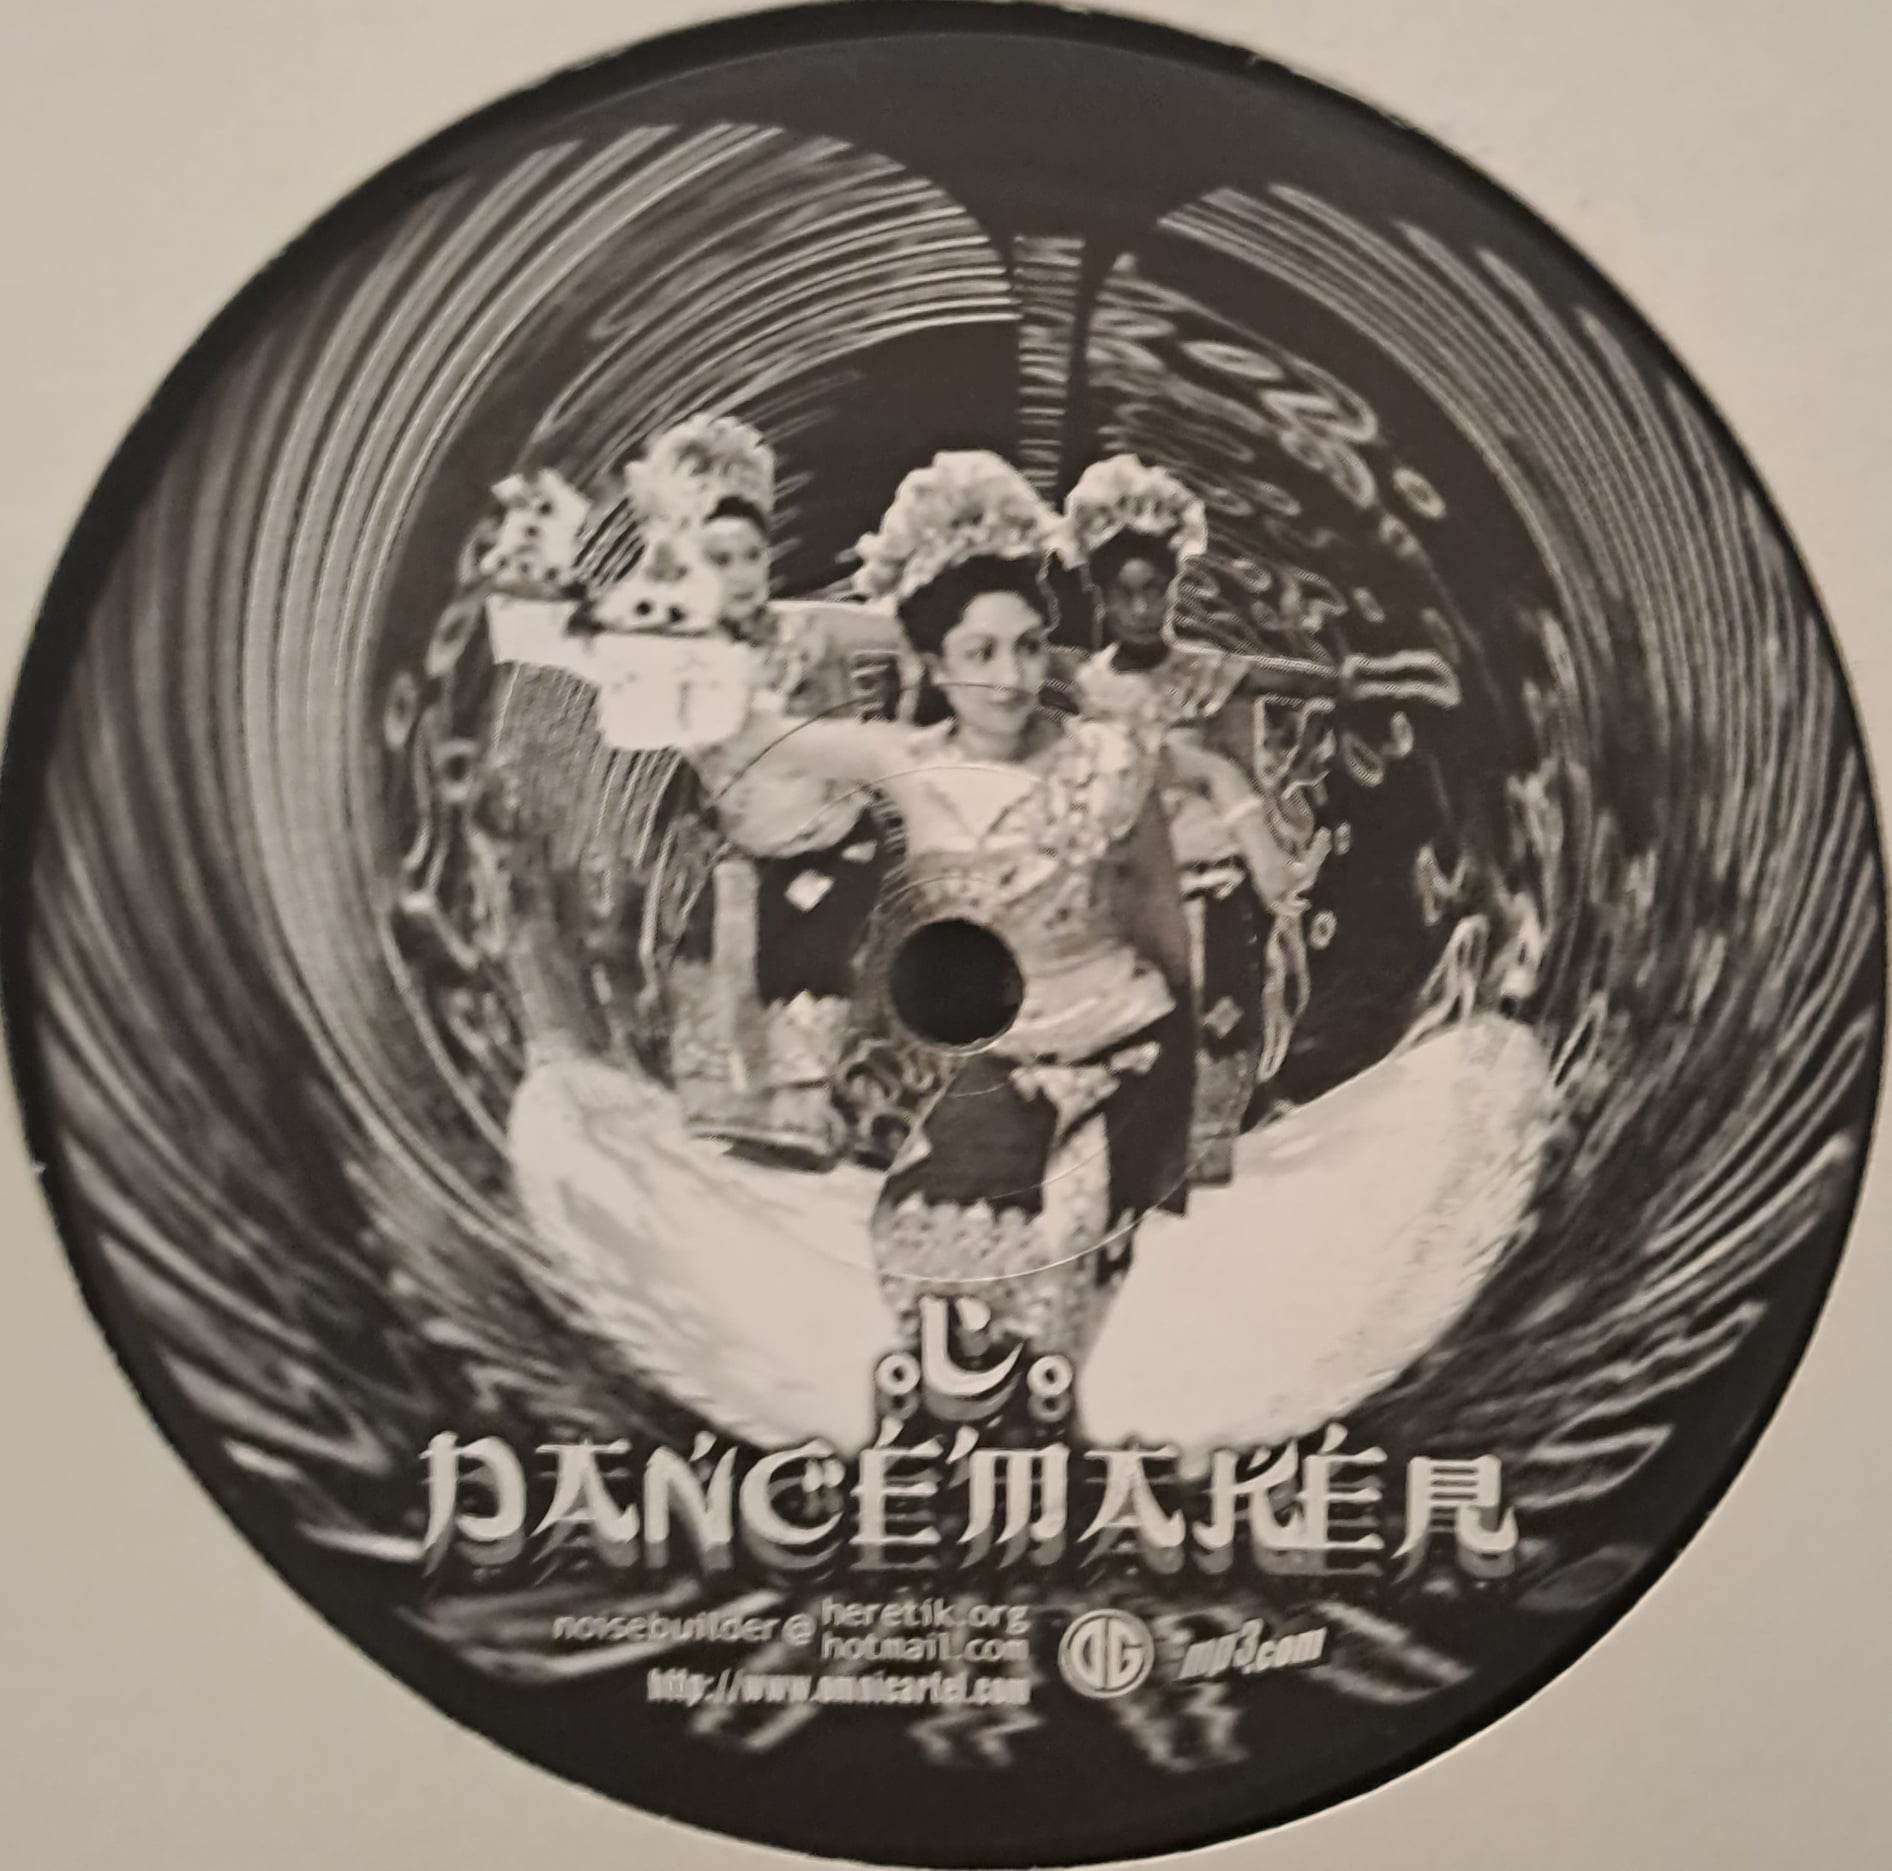 Dancemaker 003 - vinyle hardcore